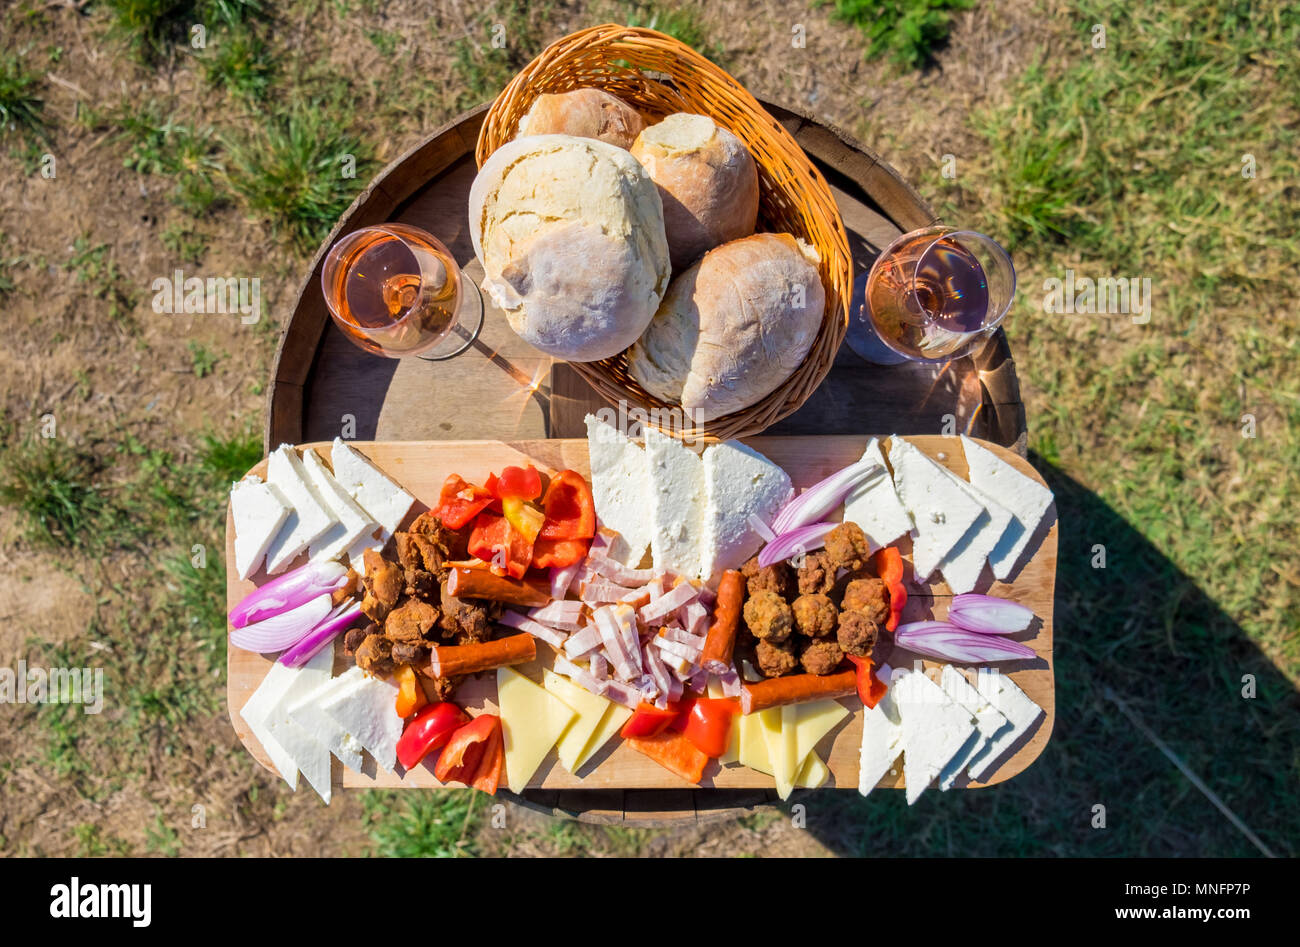 Essen mit traditionellen Osteuropa Essen: Zwiebeln, Brot, Käse, Würstchen, Frikadellen und Rotwein im Glas, in der Natur Stockfoto